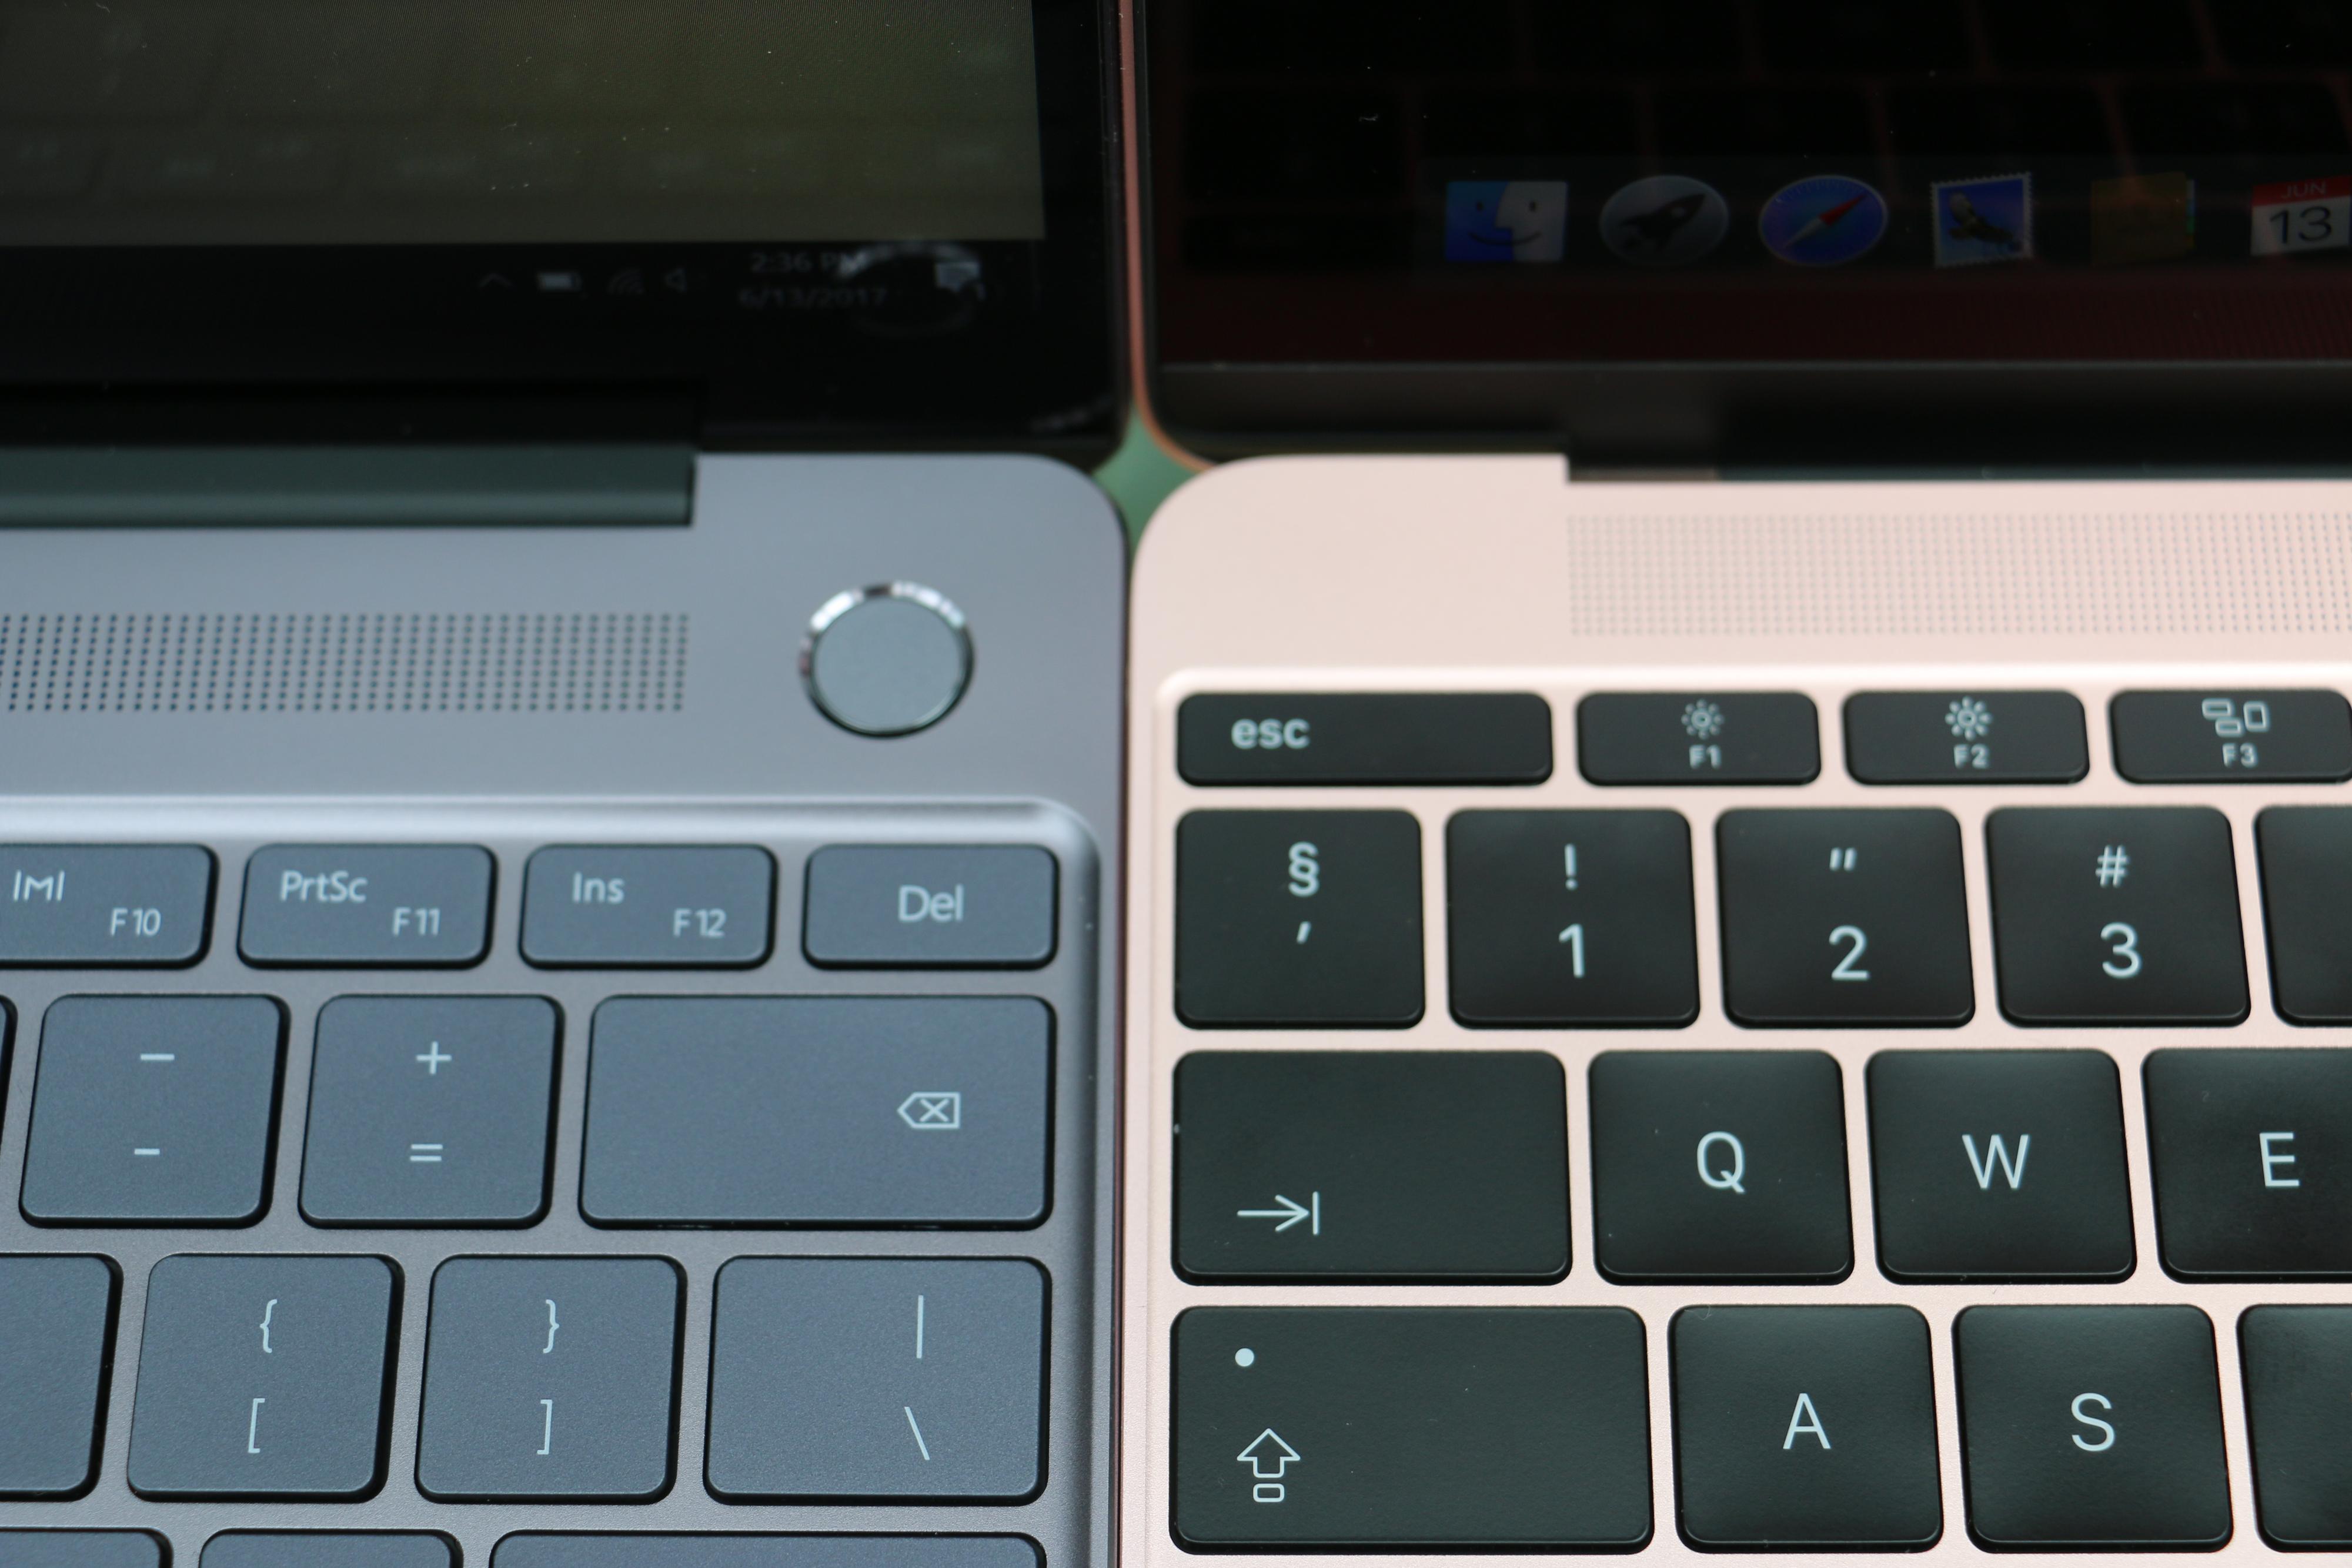 MateBook X yter langt bedre enn Apples MacBook (2016-modell) til høyre.